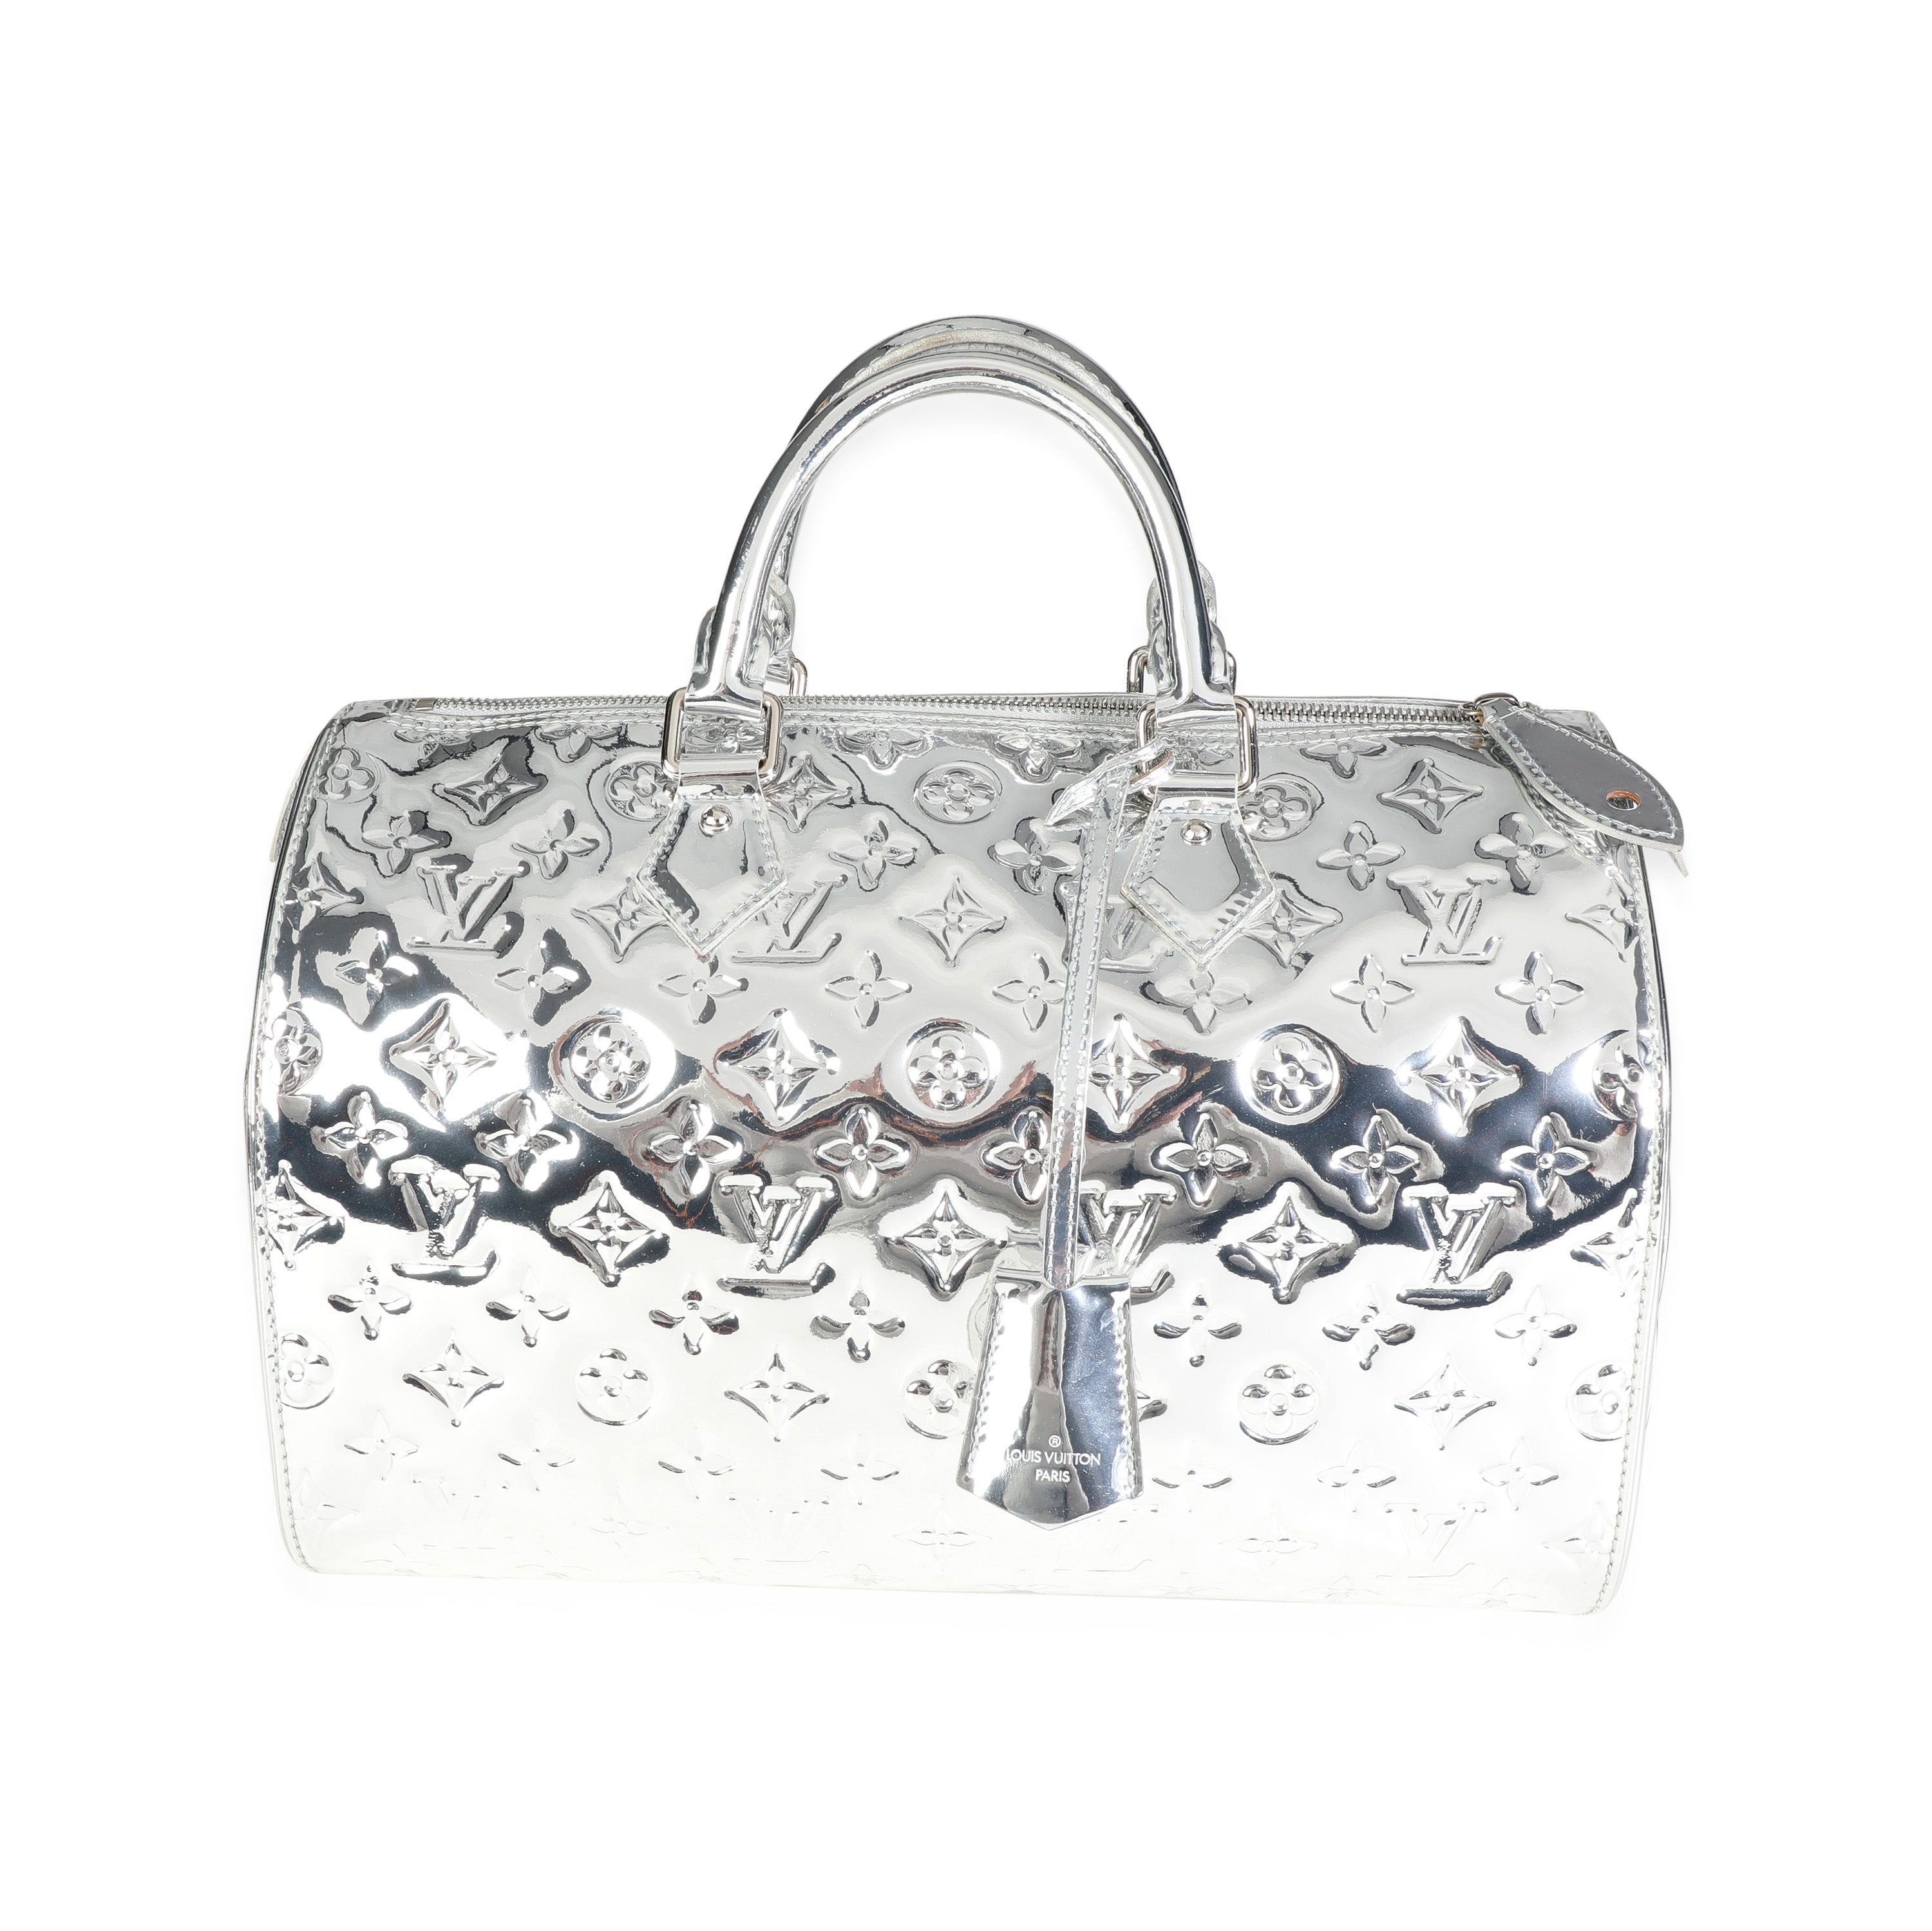 FWRD Renew Louis Vuitton 2008 Speedy 35 Monogram Mirror Bag in Silver